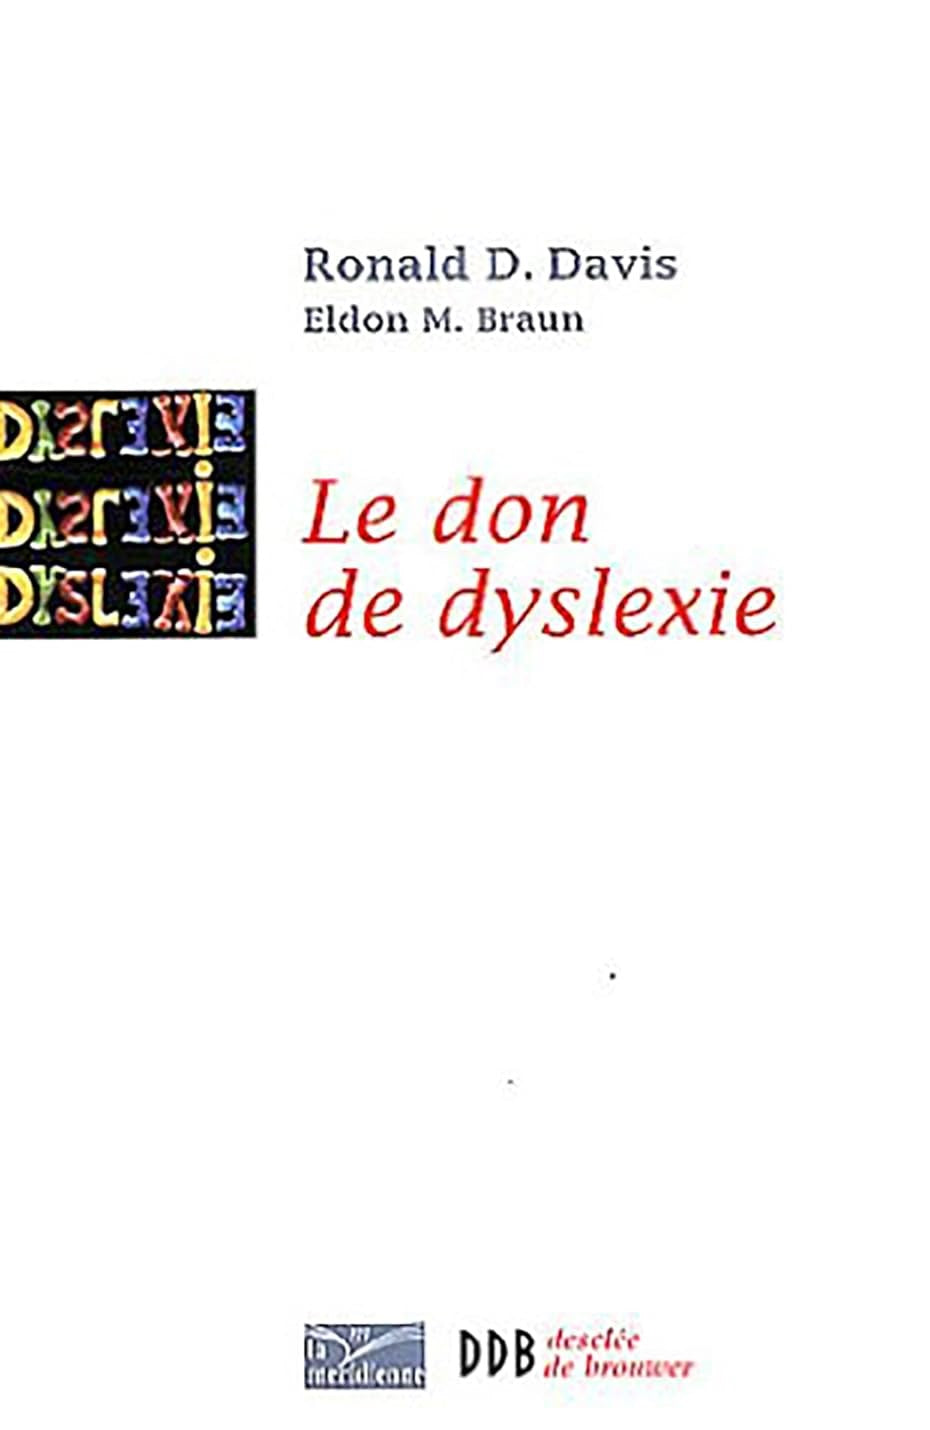 Le don de dyslexie : Et si ceux qui n'arrivent pas à lire étaient en fait très intelligents - Ronald D. Davis